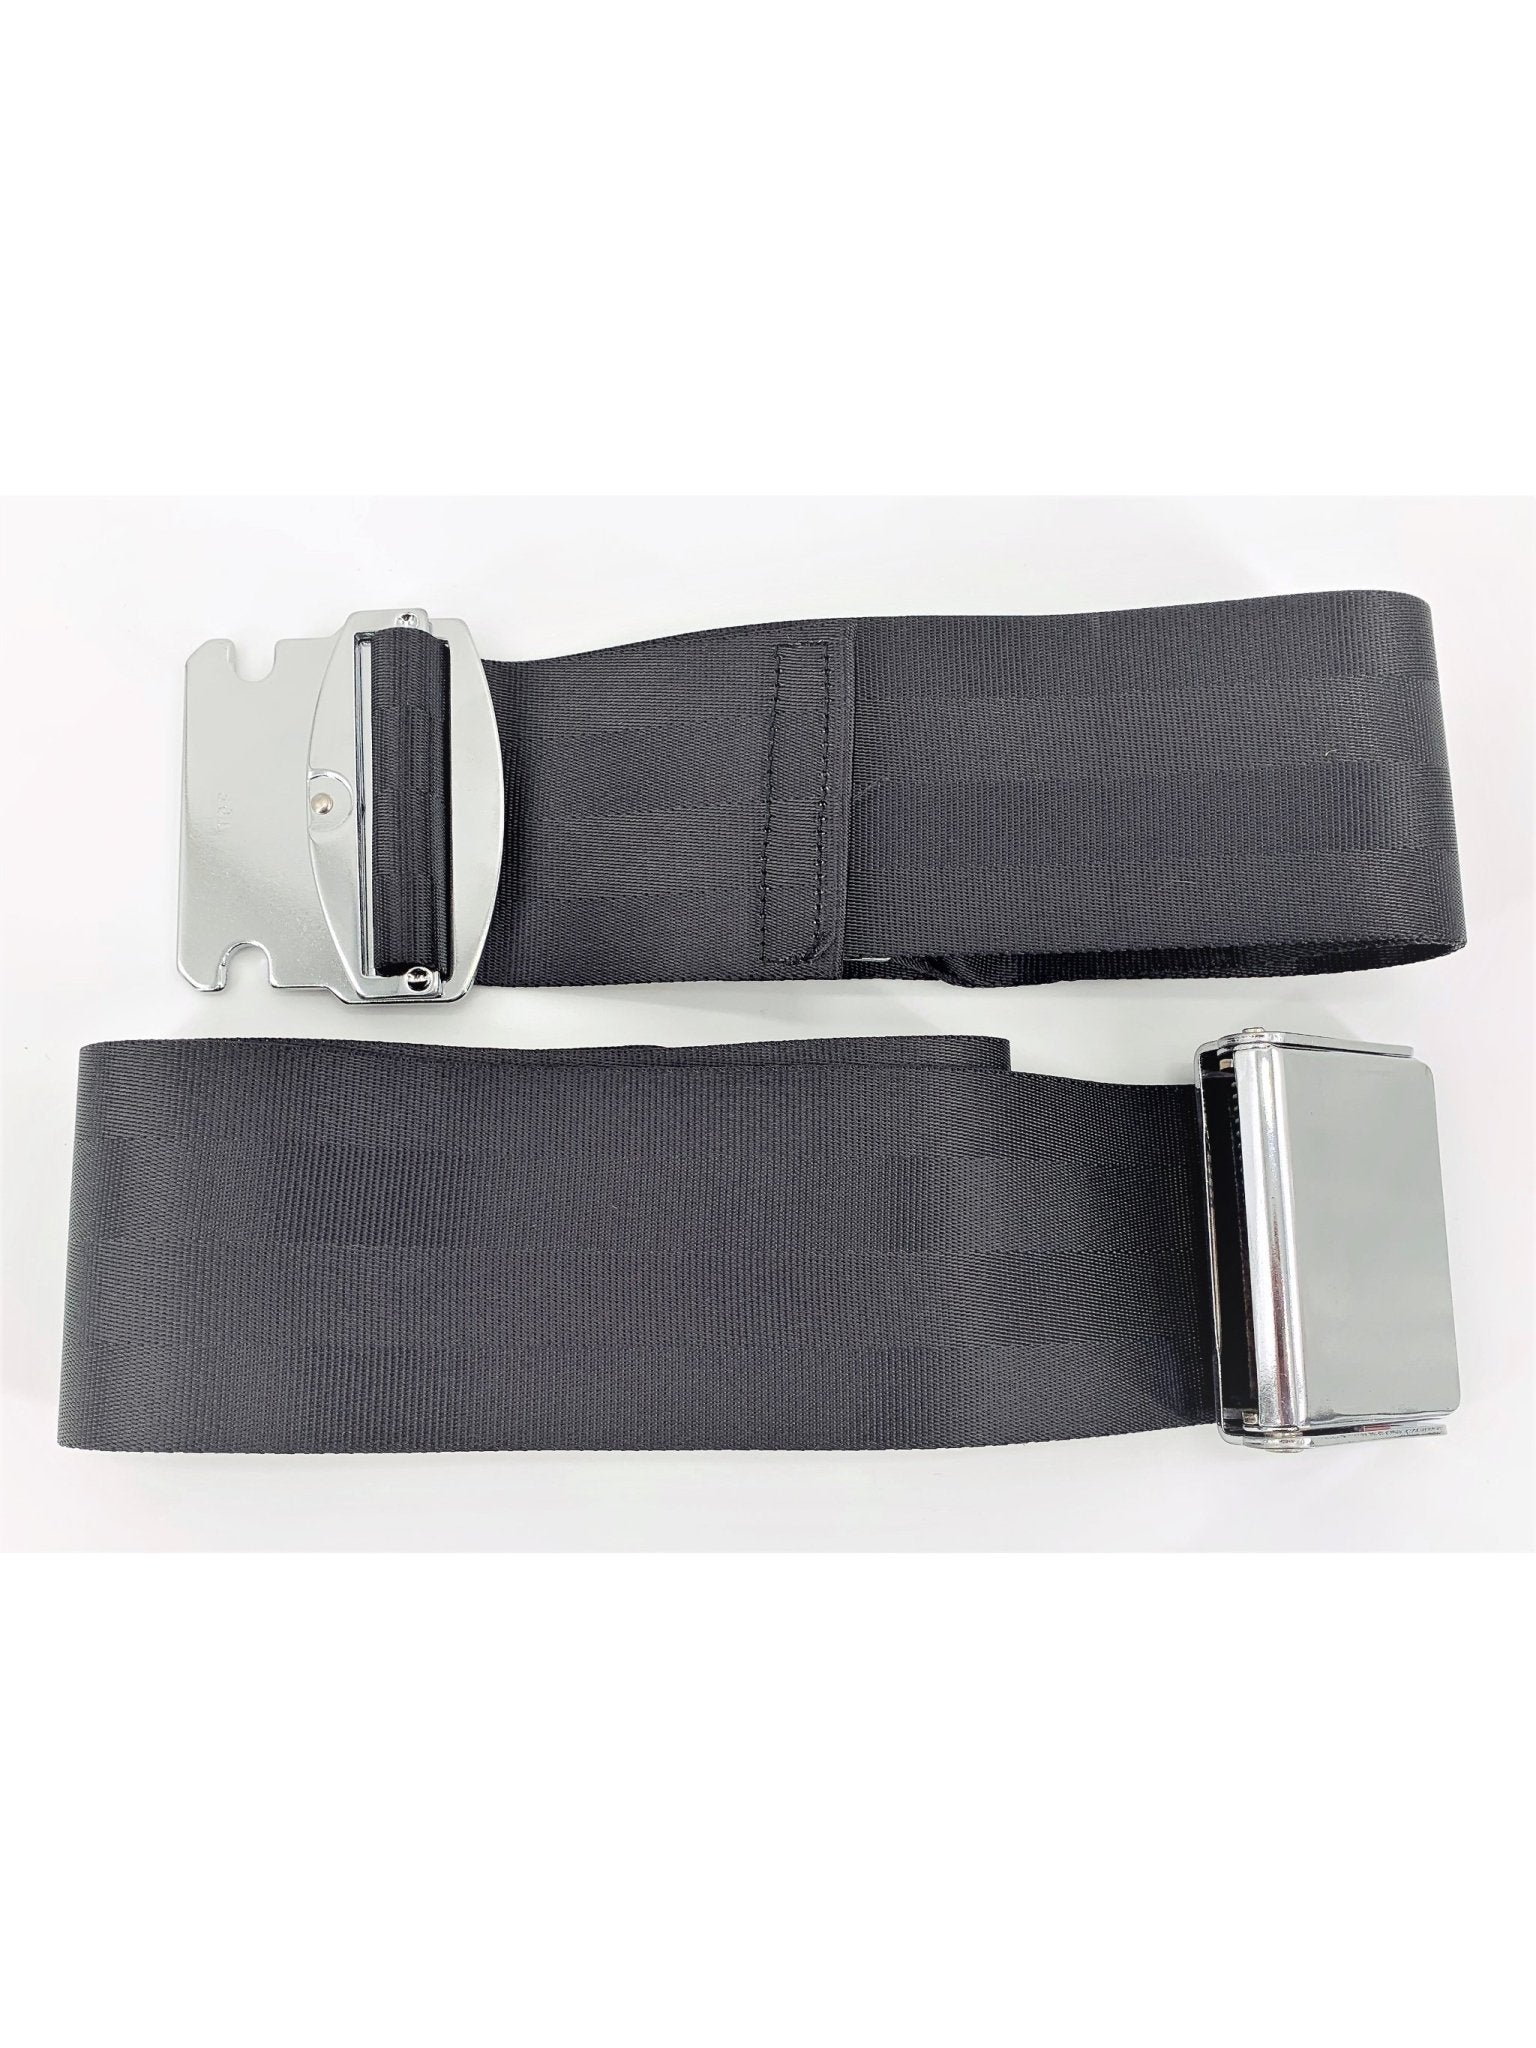 Lap Belt Extender - AmSafe 500901